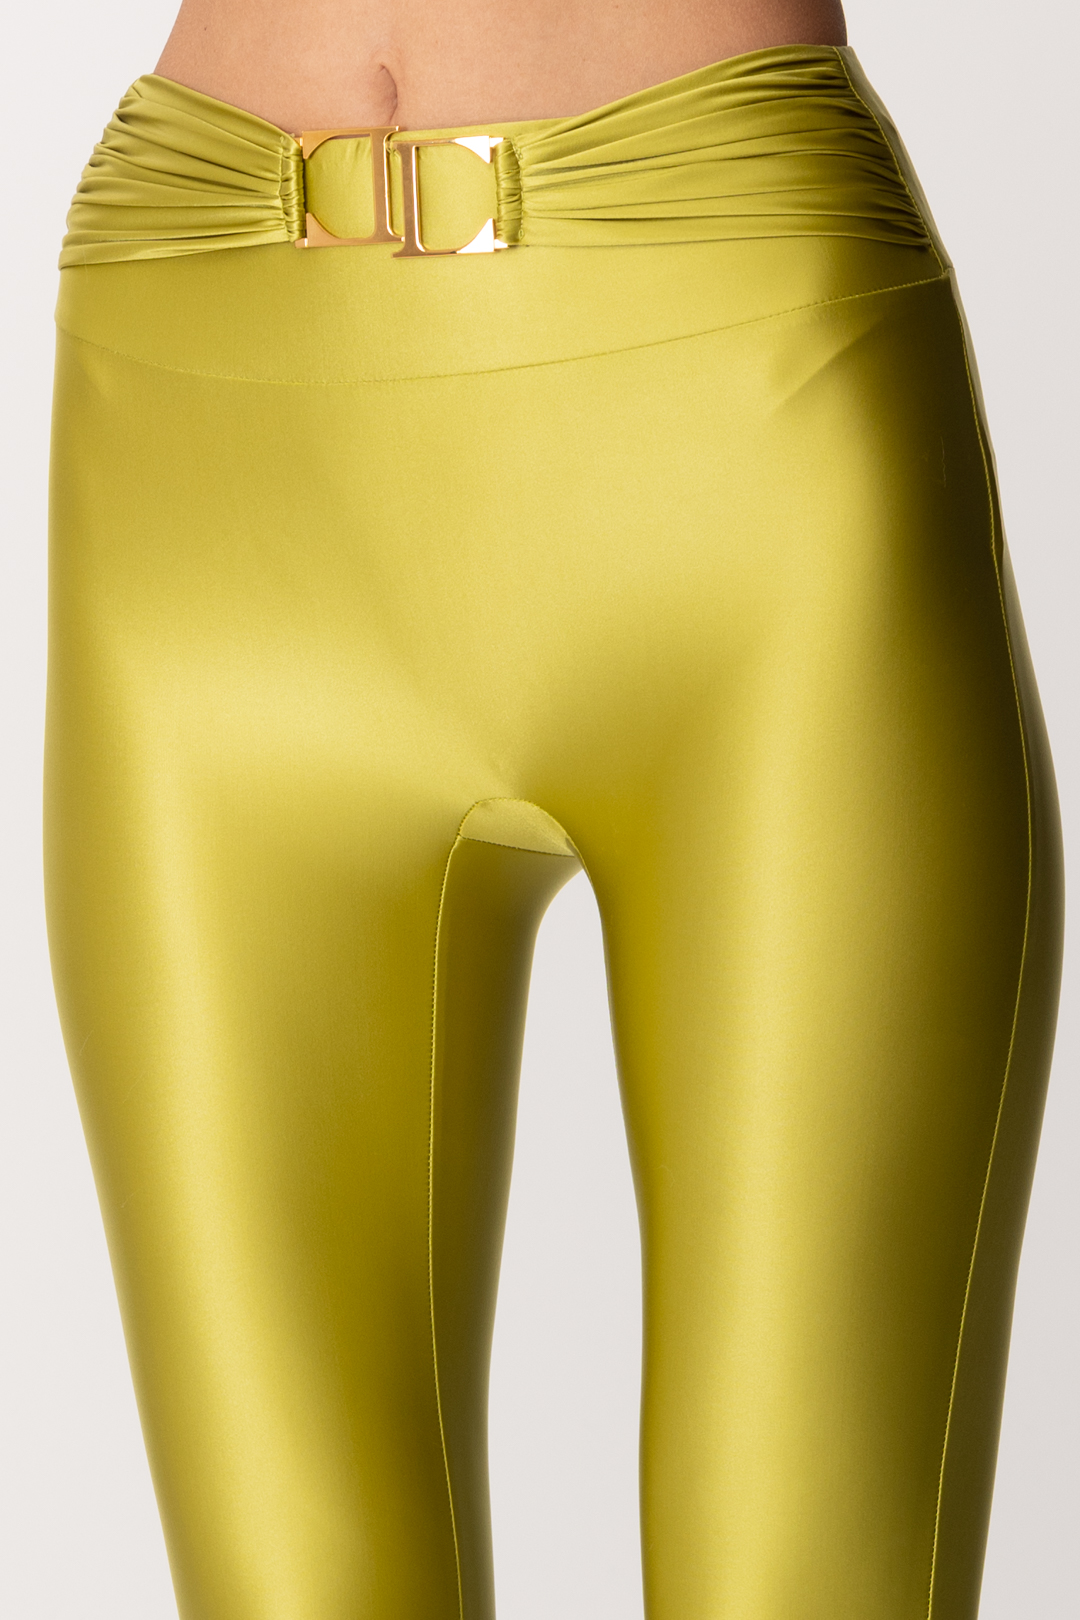 Buy PKYC Women's Lycra Shimmer Leggings 08-38, Light Gold, 38 at